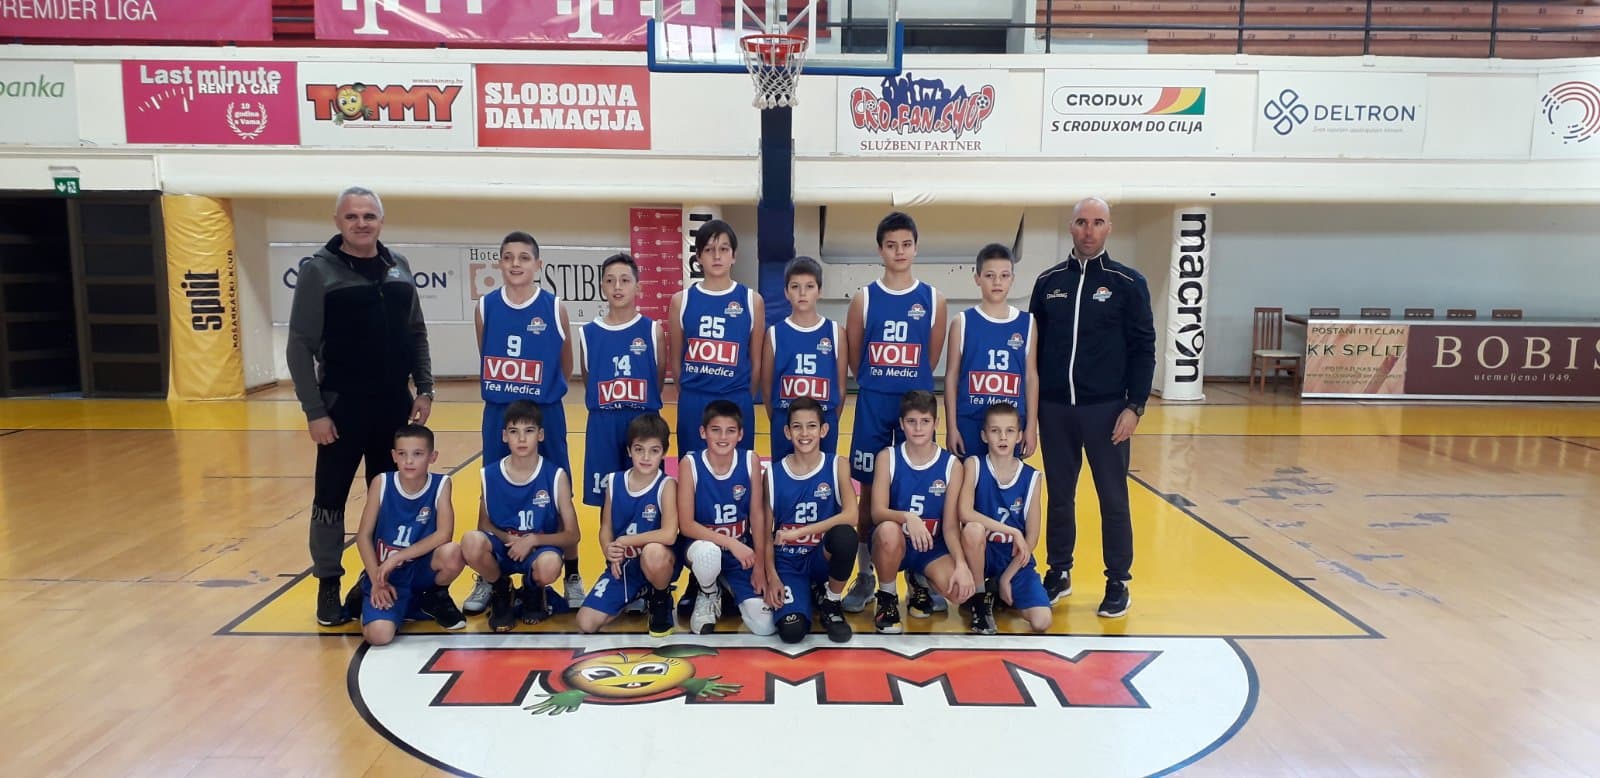 Mlađi pioniri ekipe Budućnost Voli sa dvije pobjede završili turnir u Splitu